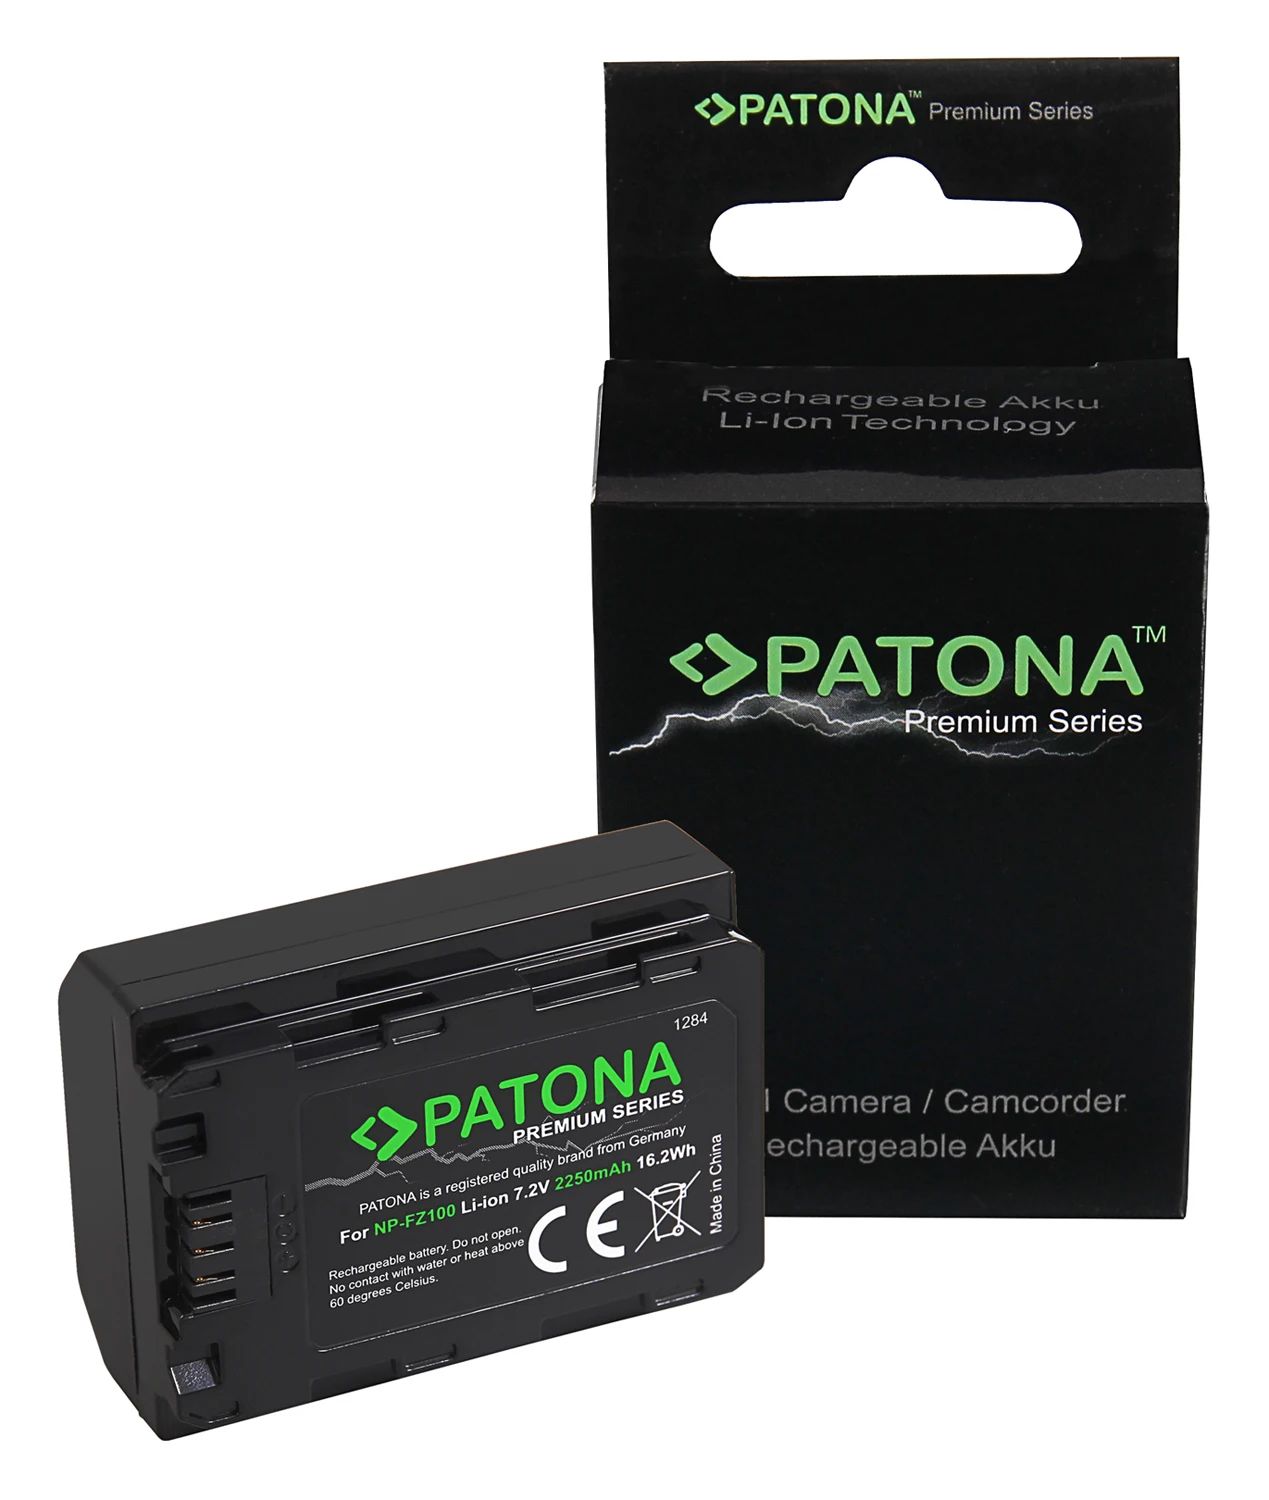 Patona Premium Camera Battery For : 2250mah: 7,2v: 16,2 Wh - Buy Np-fz100,Camera Battery,Patona on Alibaba.com